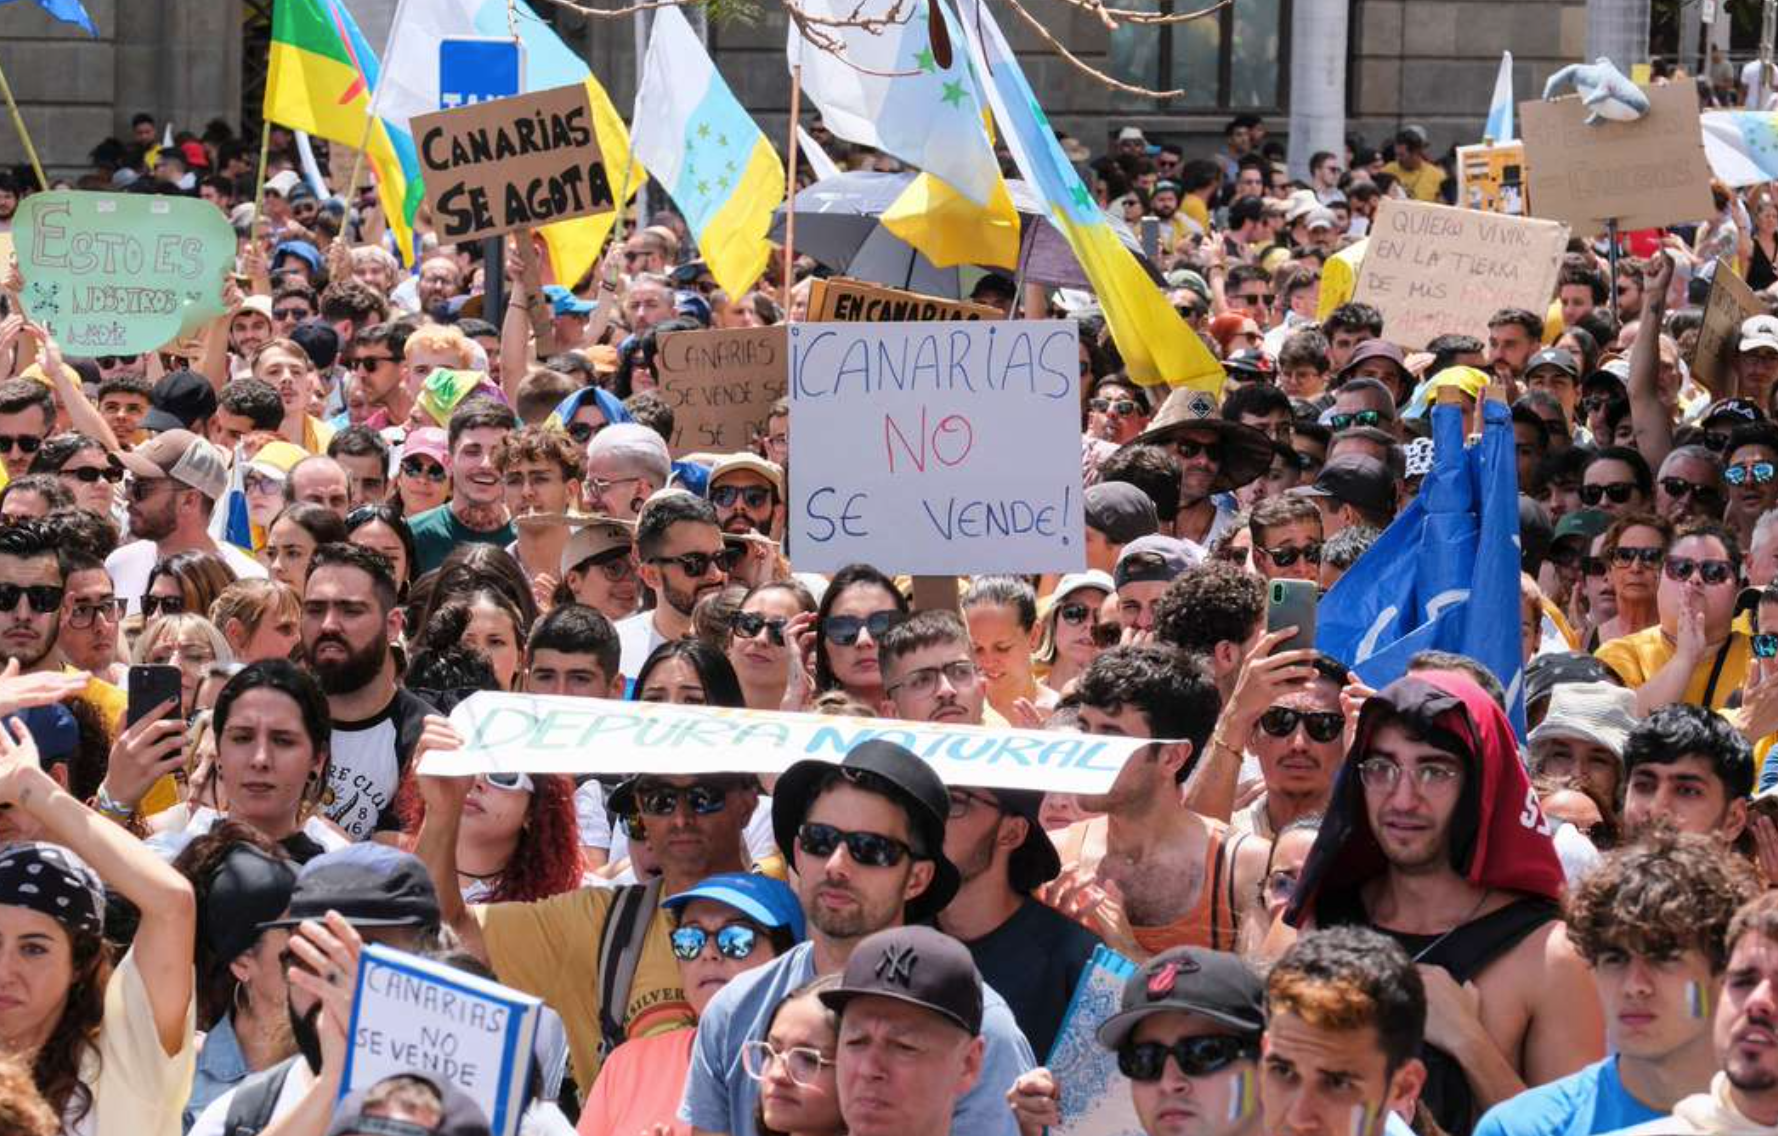 Marchan en las Islas Canarias contra turismo de masas y gentrificación 